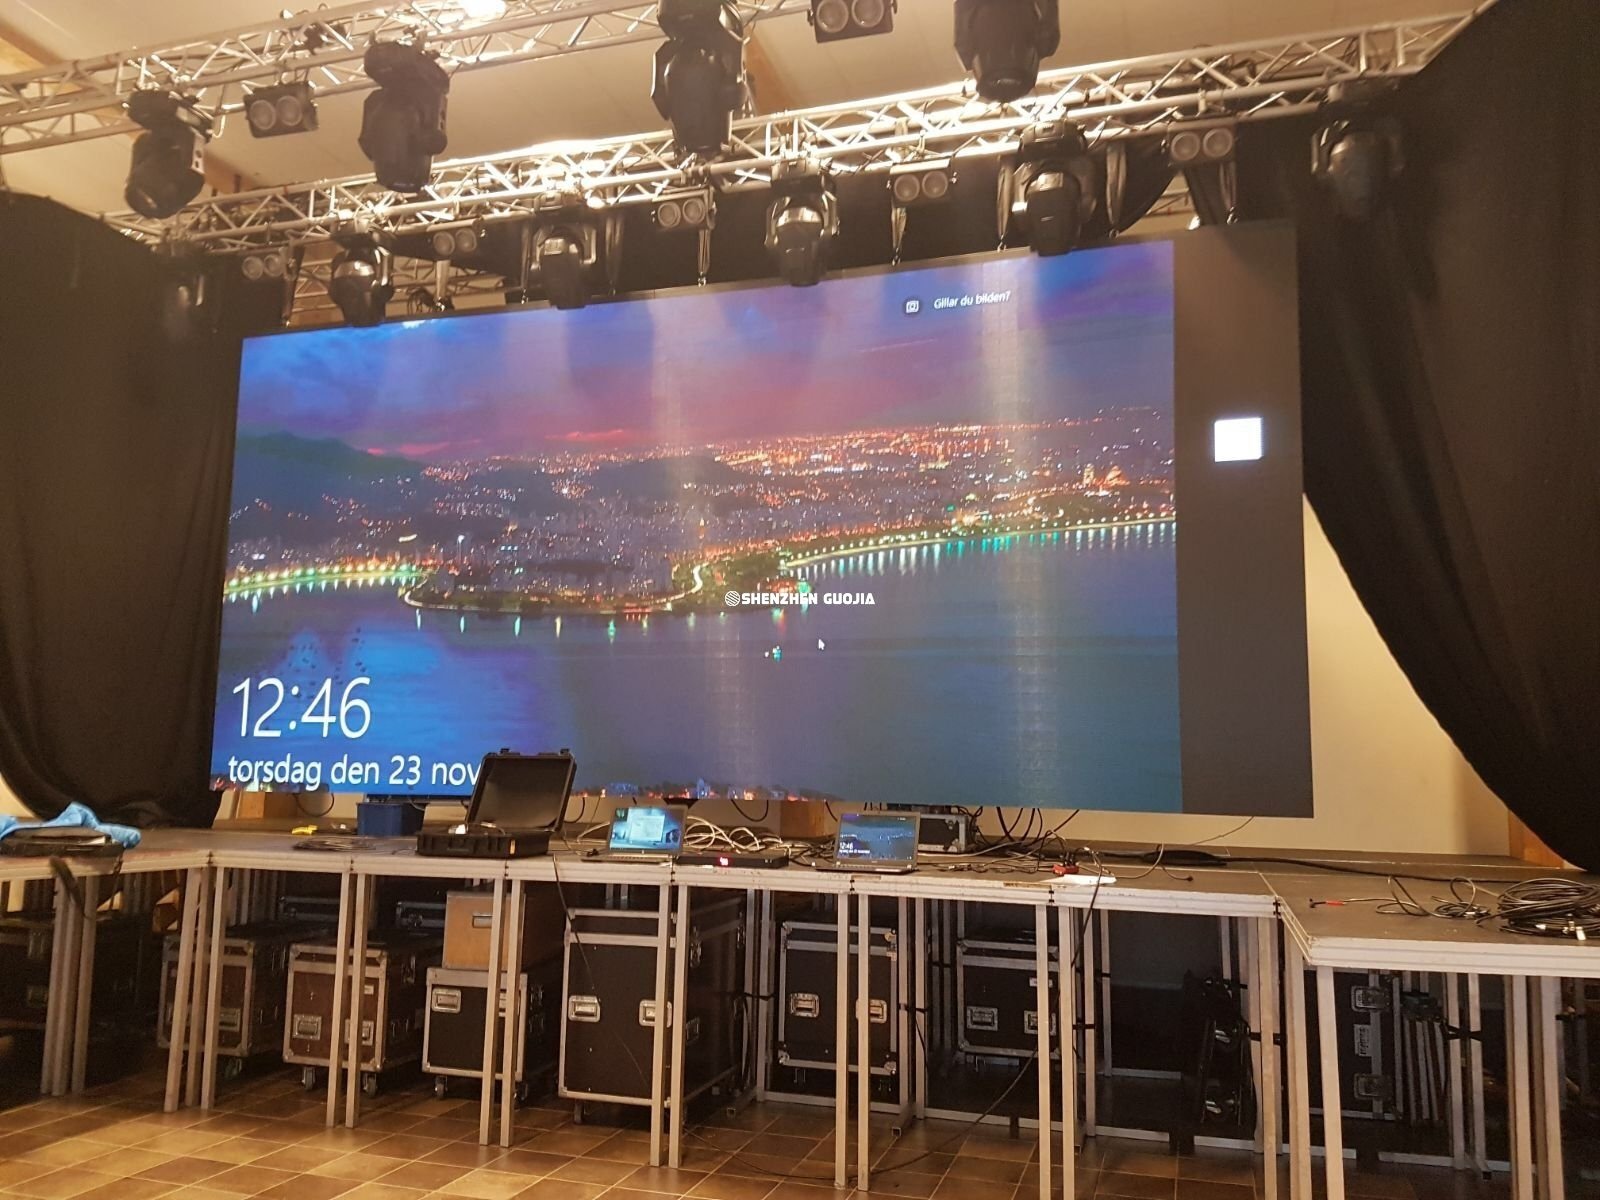 led screen panels